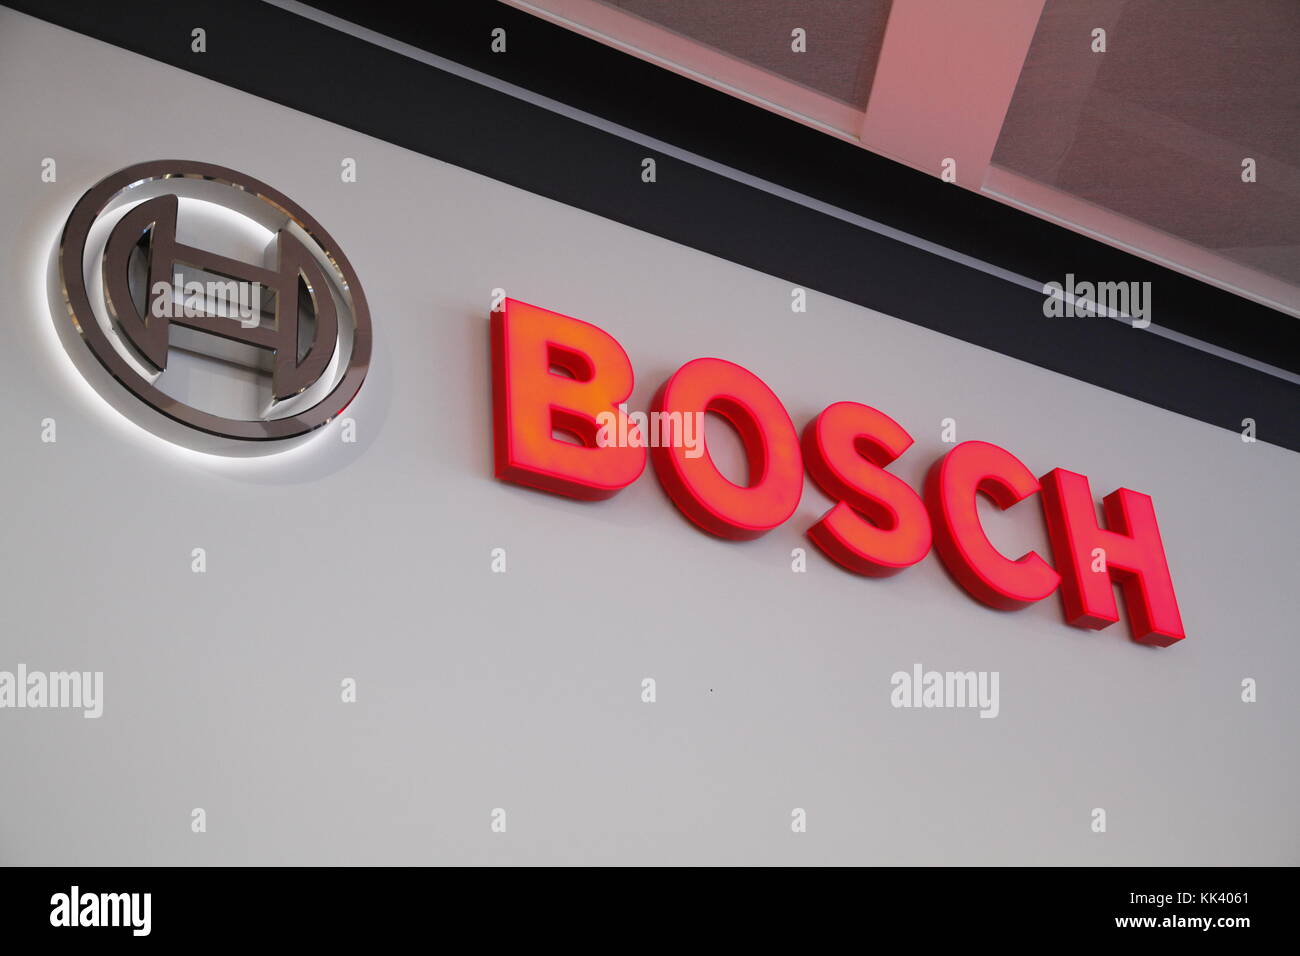 Etichetta di Bosch Foto Stock